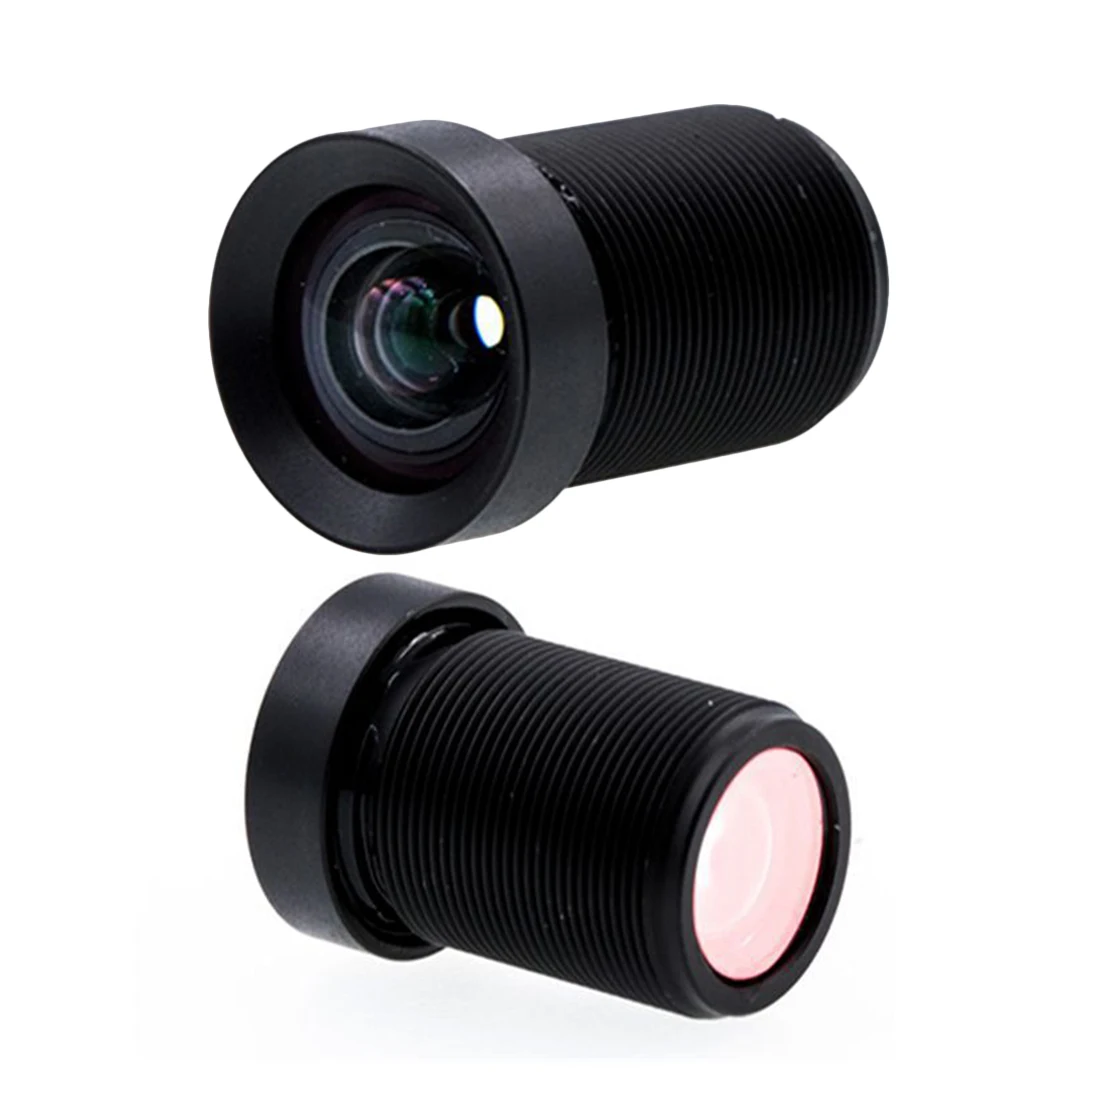 Спорт DV объектив камеры 4K с низким искажением объектив 1/2. 3 дюйма Разрешение 4,35 мм без искажений объектив 10MP F/2,5 HD 72 градусов